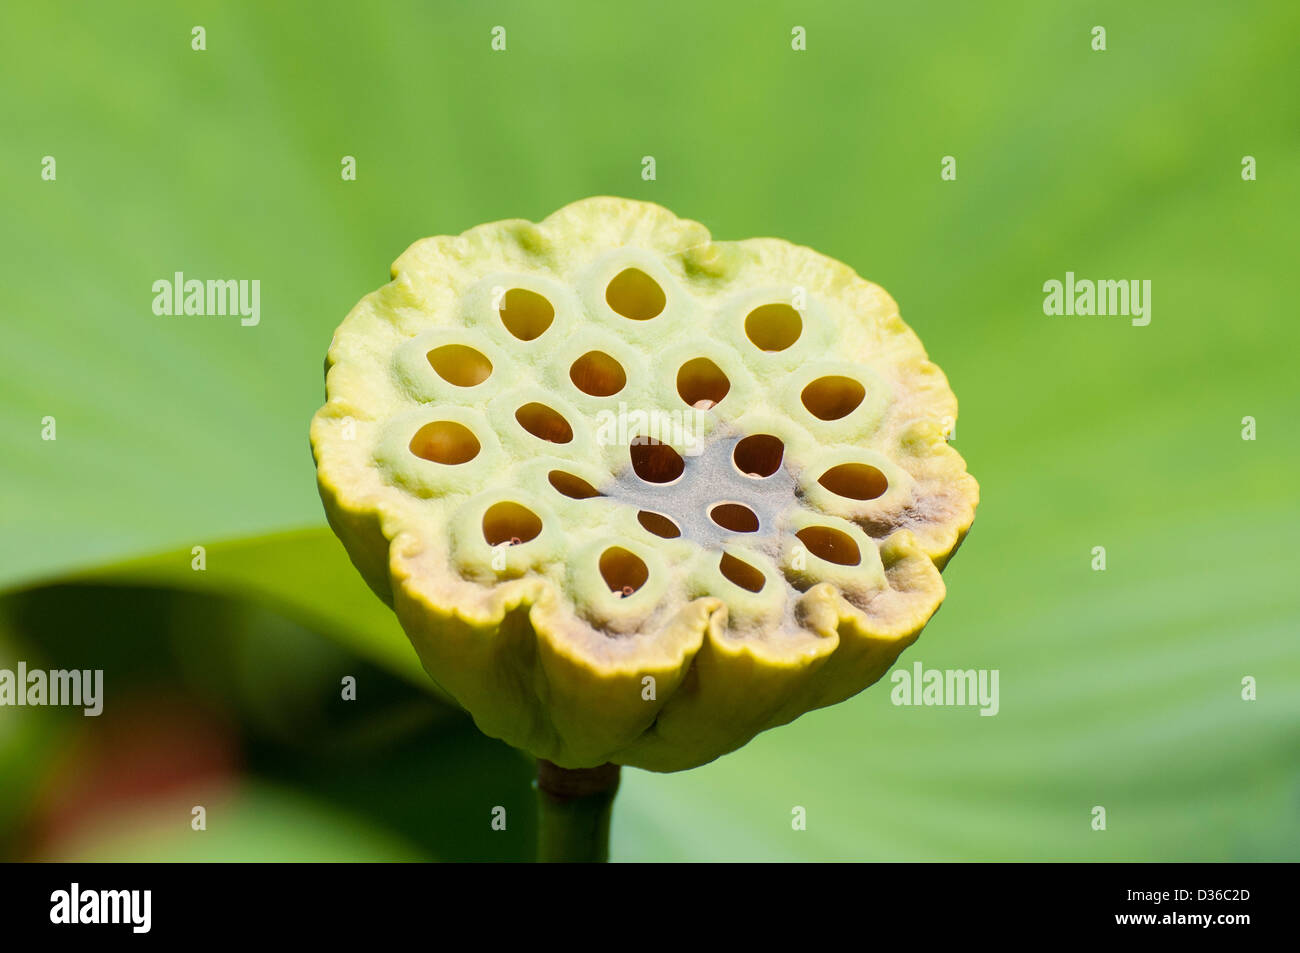 A lotus flower (Nelumbo nucifera) fruit or seed head, in a